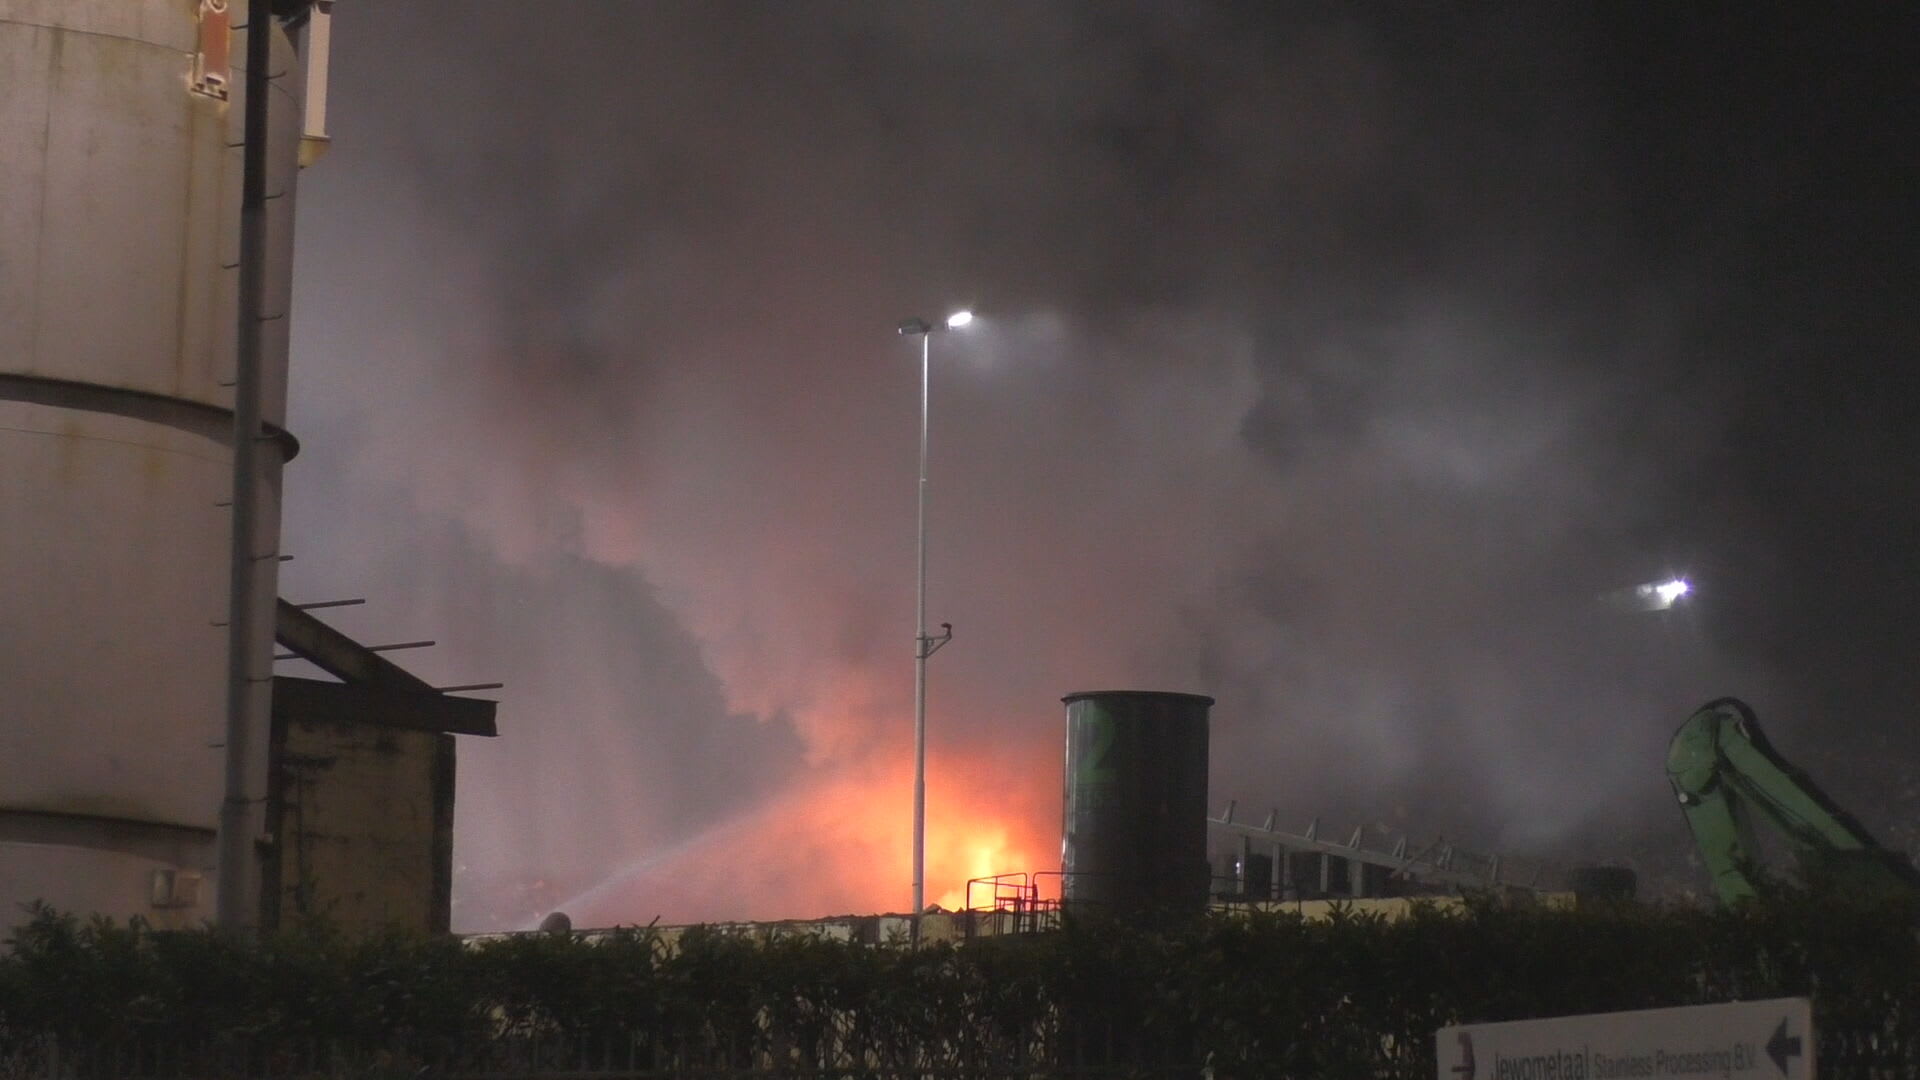 Veel rook door brand in afvalberg in Botlek, NL-Alert afgegeven